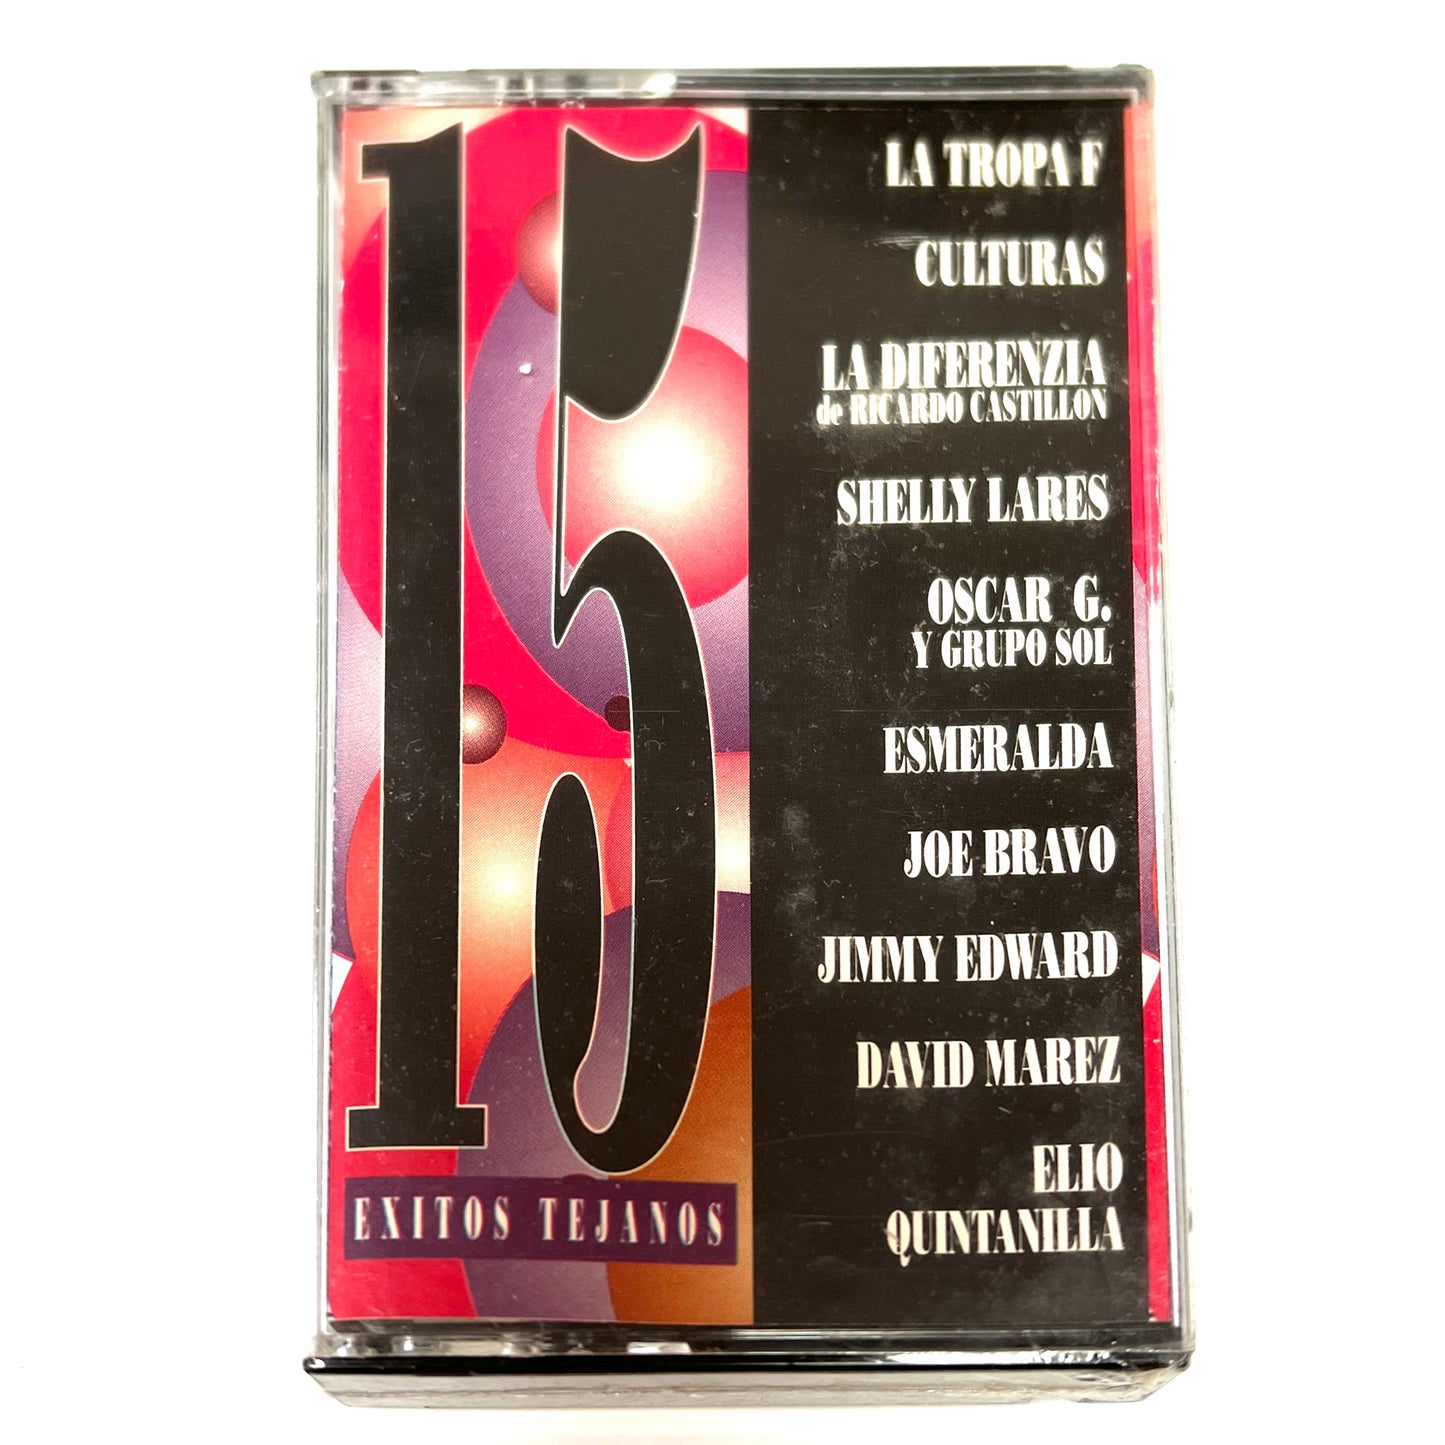 15 Exitos Tejanos - Various Artists (Cassette)